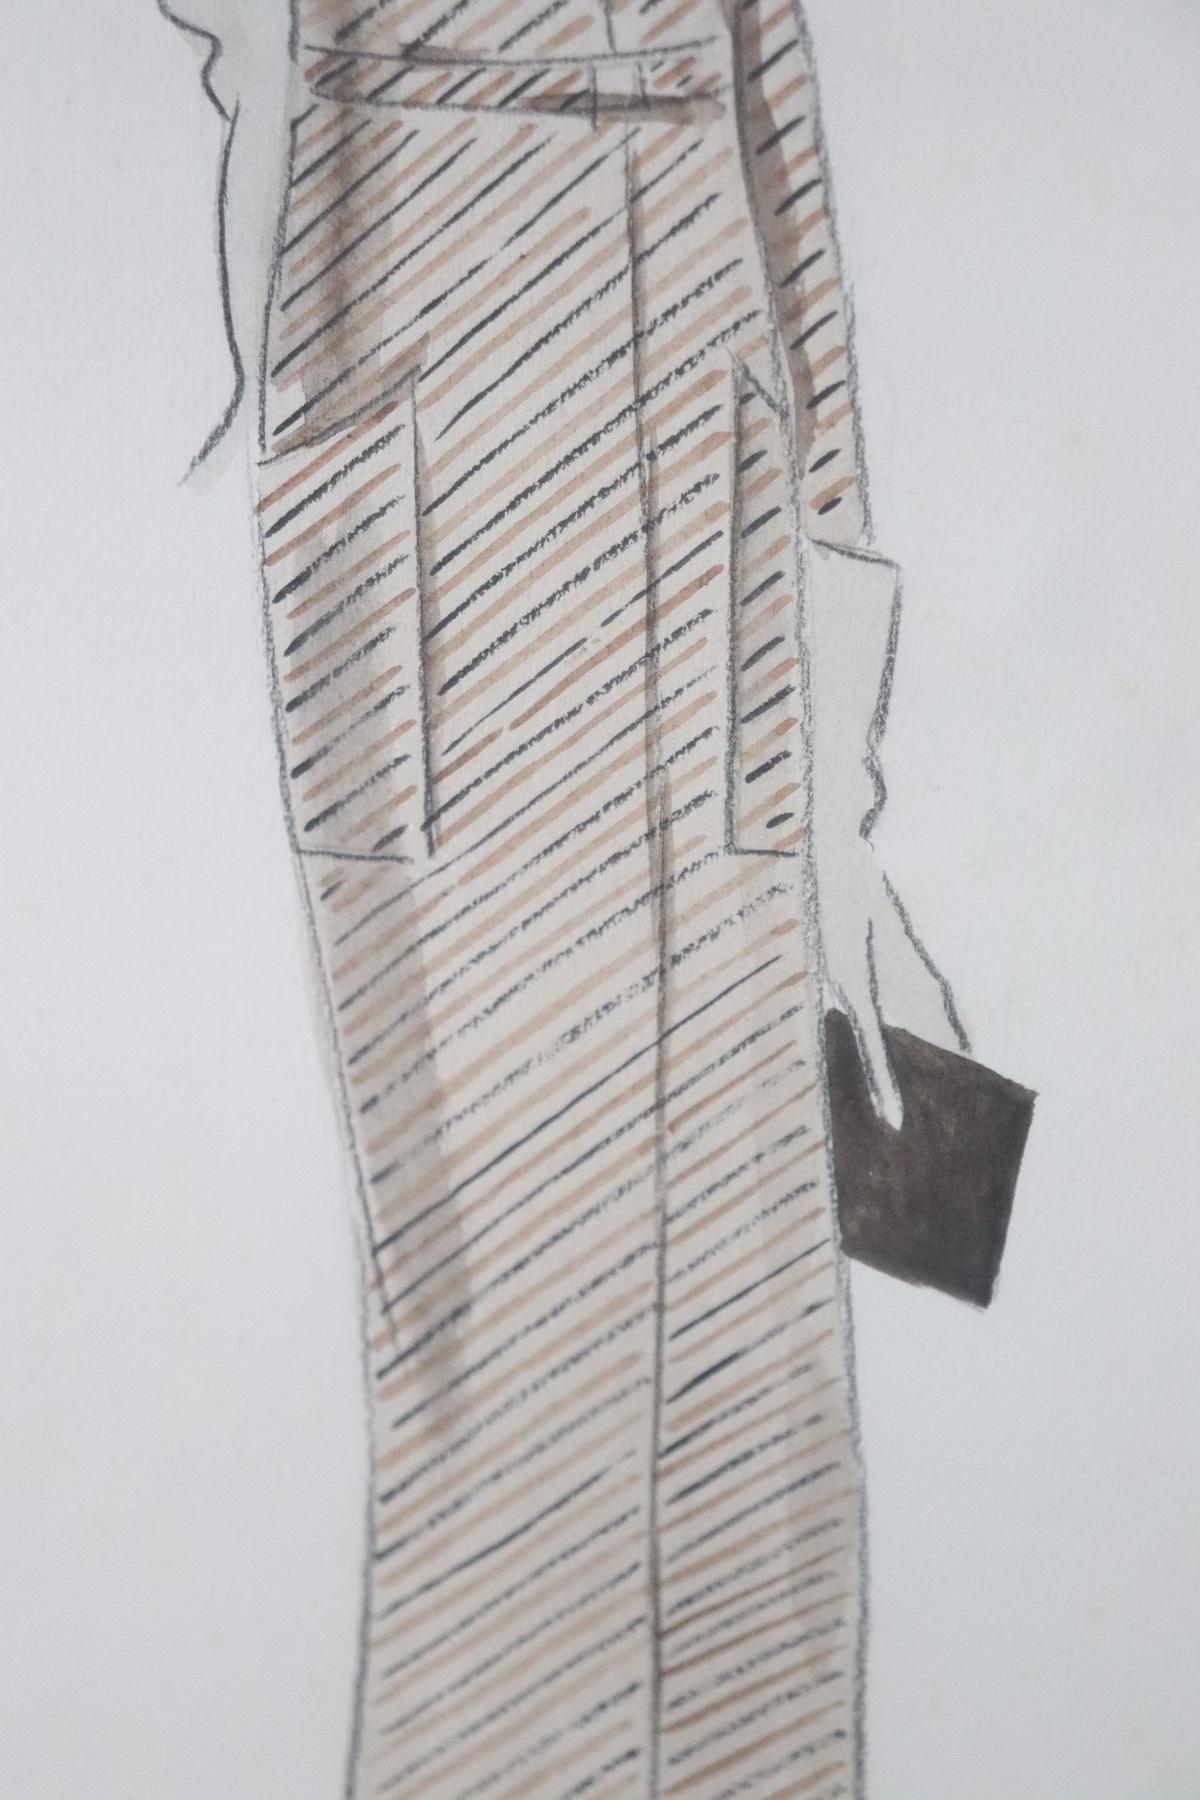 Paper Italian Art Deco Stylist John Guida Watercolor and Pastel Pencil Fashion Design